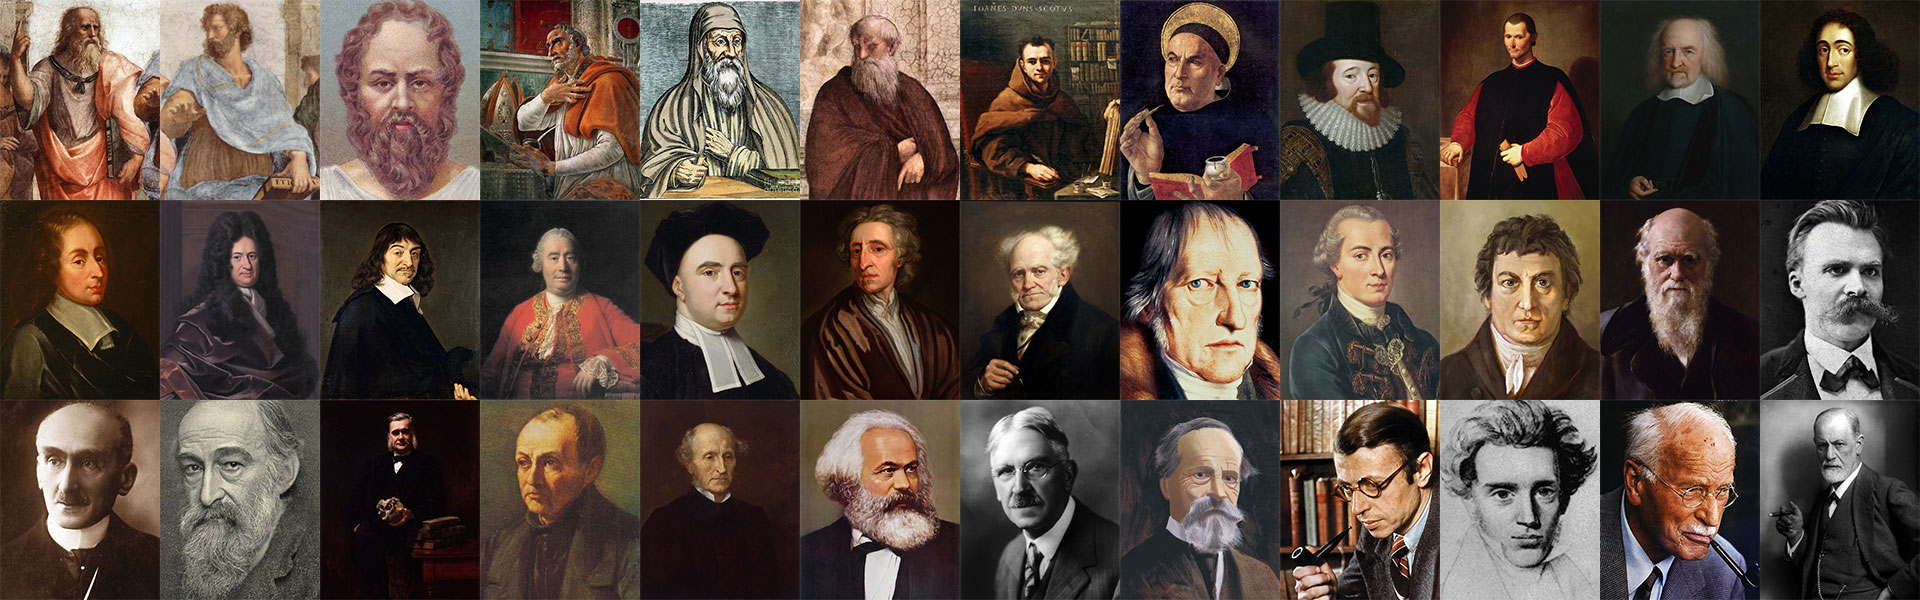 Наука люди знаменитые. Известные философы. Портреты известных ученых. Самые знаменитые философы. Ученые философы.